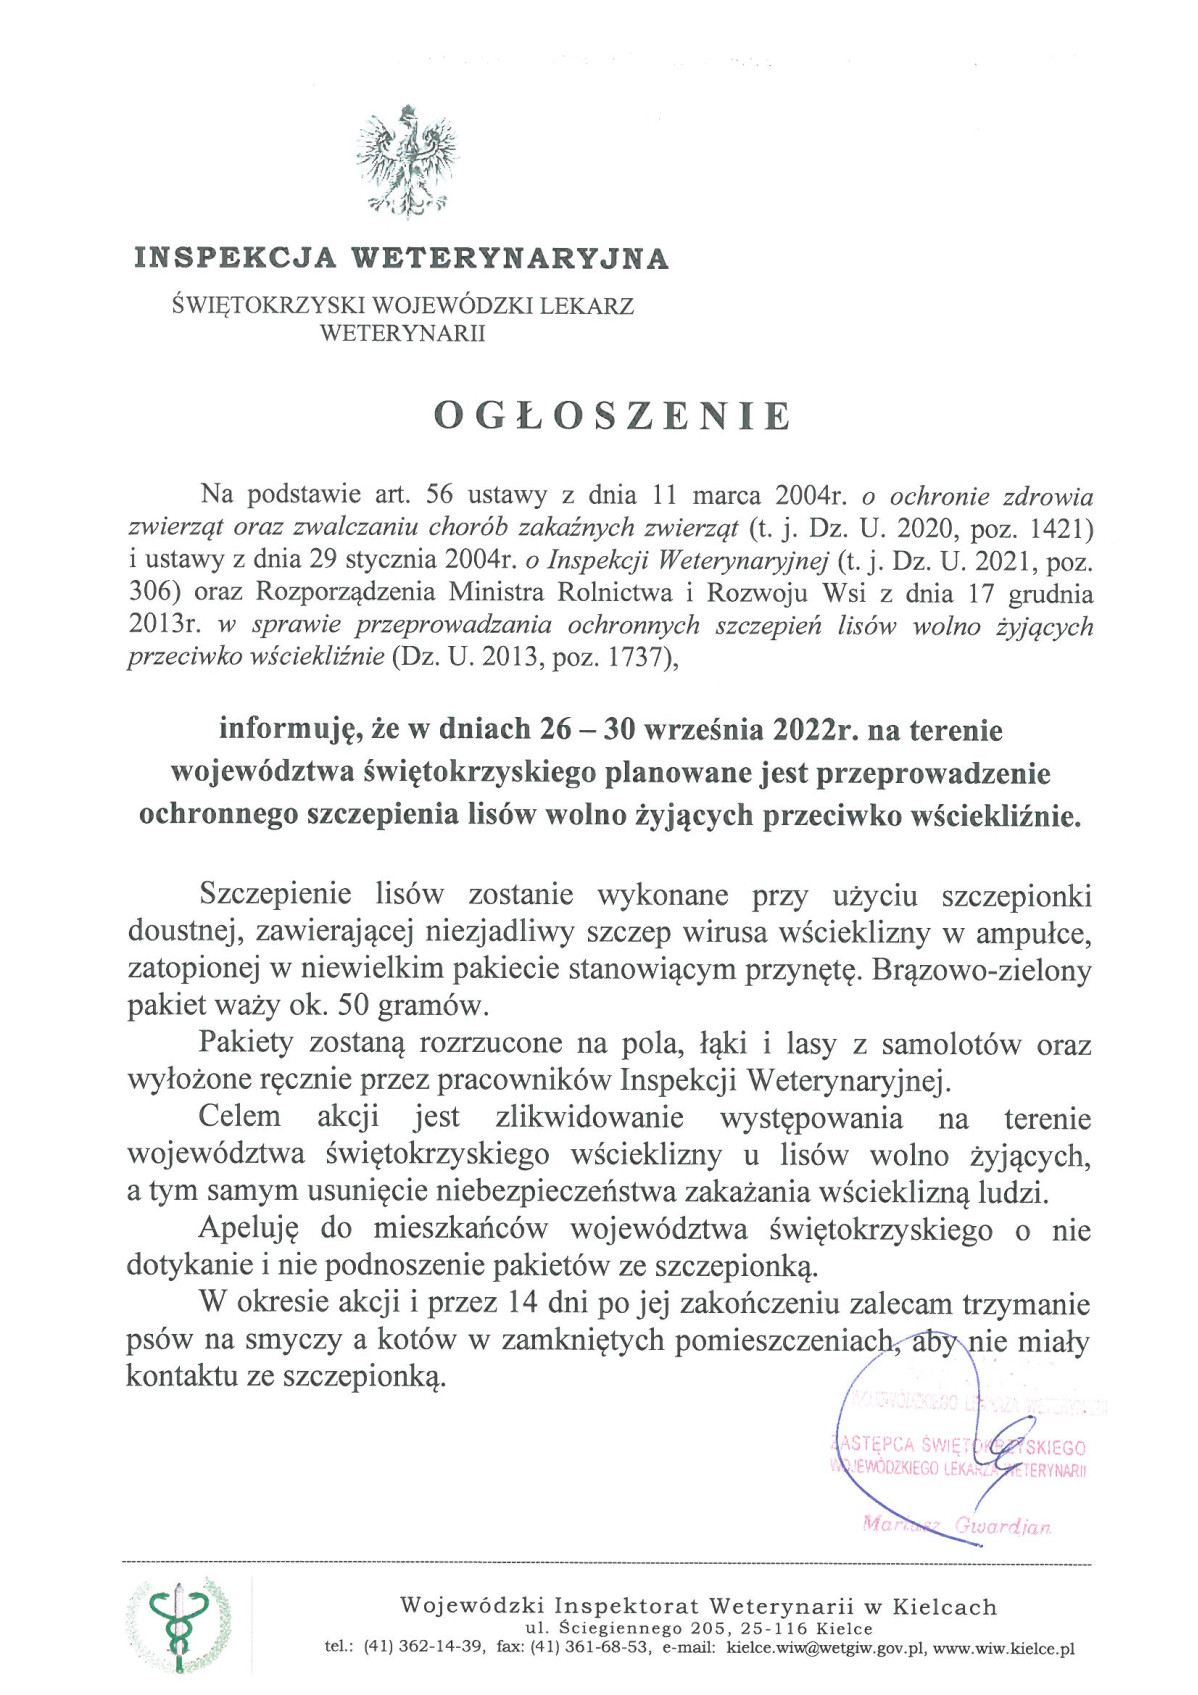 Ogłoszenie: W dniach 26 – 30 września 2022r. na terenie województwa świętokrzyskiego planowane jest przeprowadzenie ochronnego szczepienia lisów wolno żyjących przeciwko wściekliźnie.